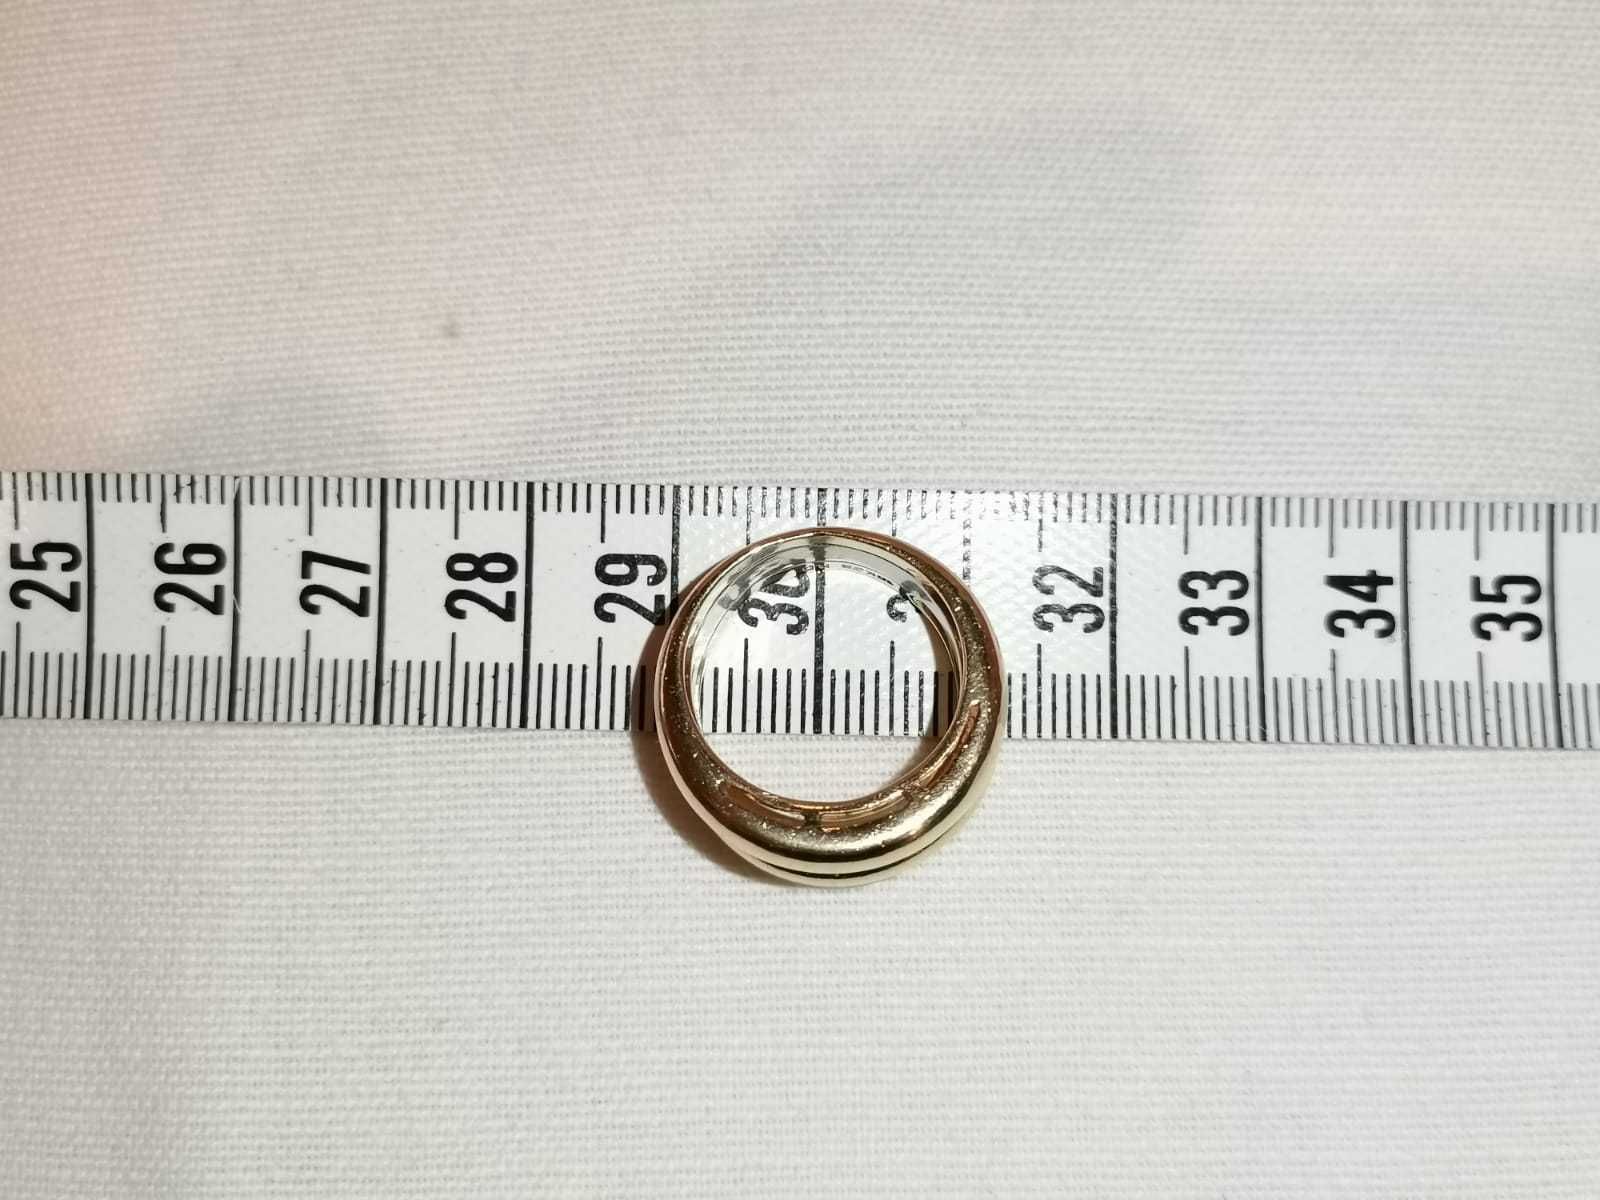 Vand inel aur 18k cu diamante 0,72ct cu certificat